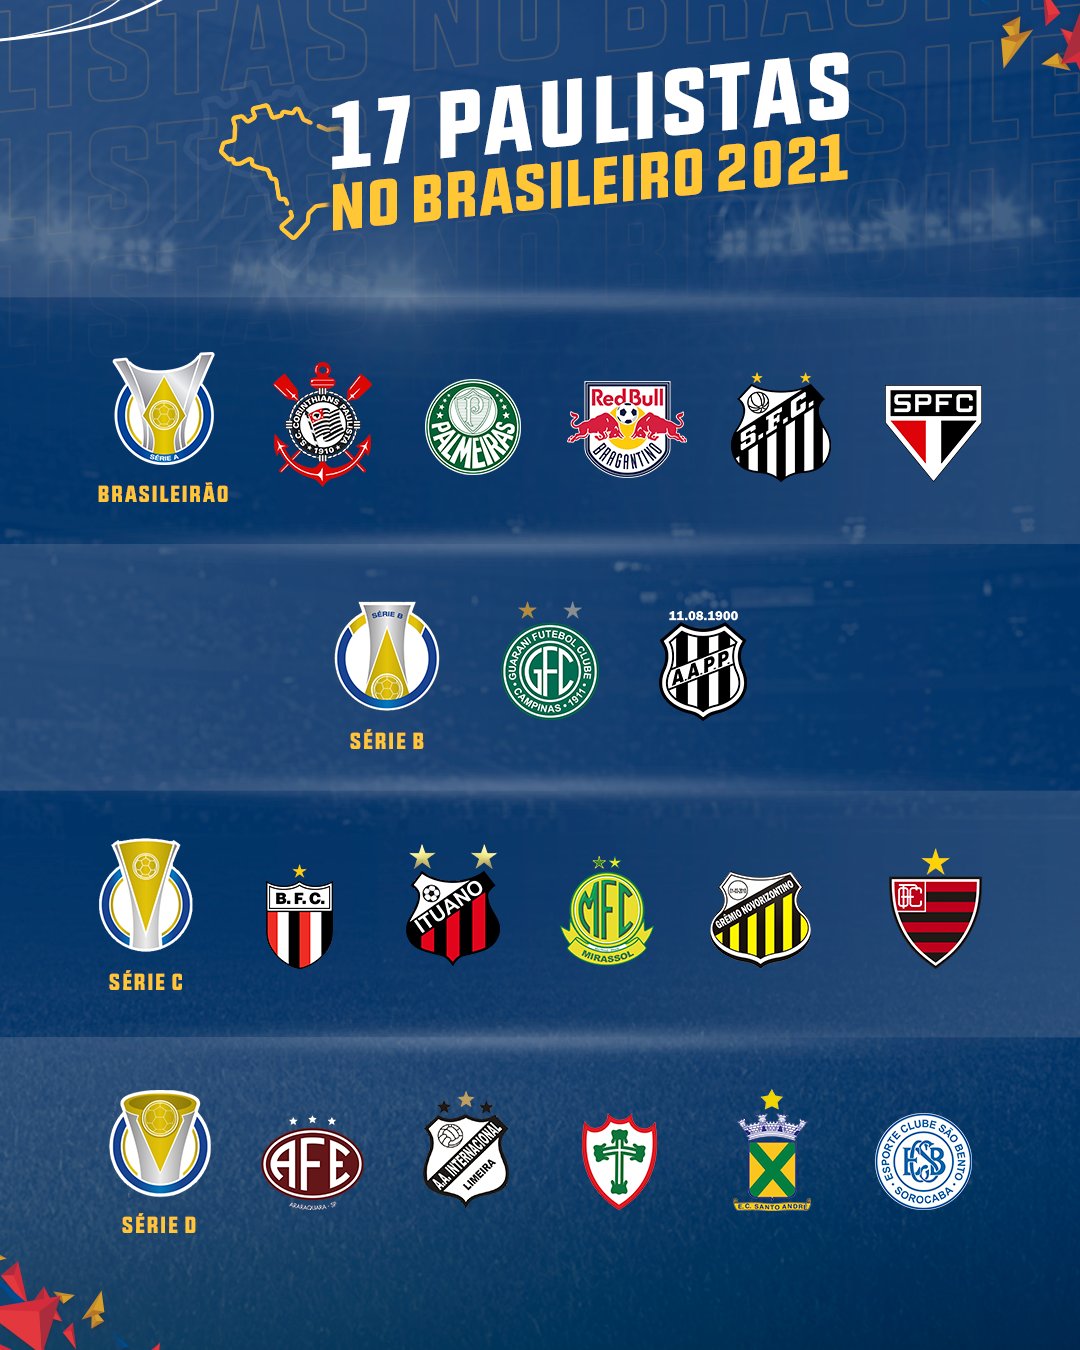 Os clubes potiguares na última divisão do futebol brasileiro